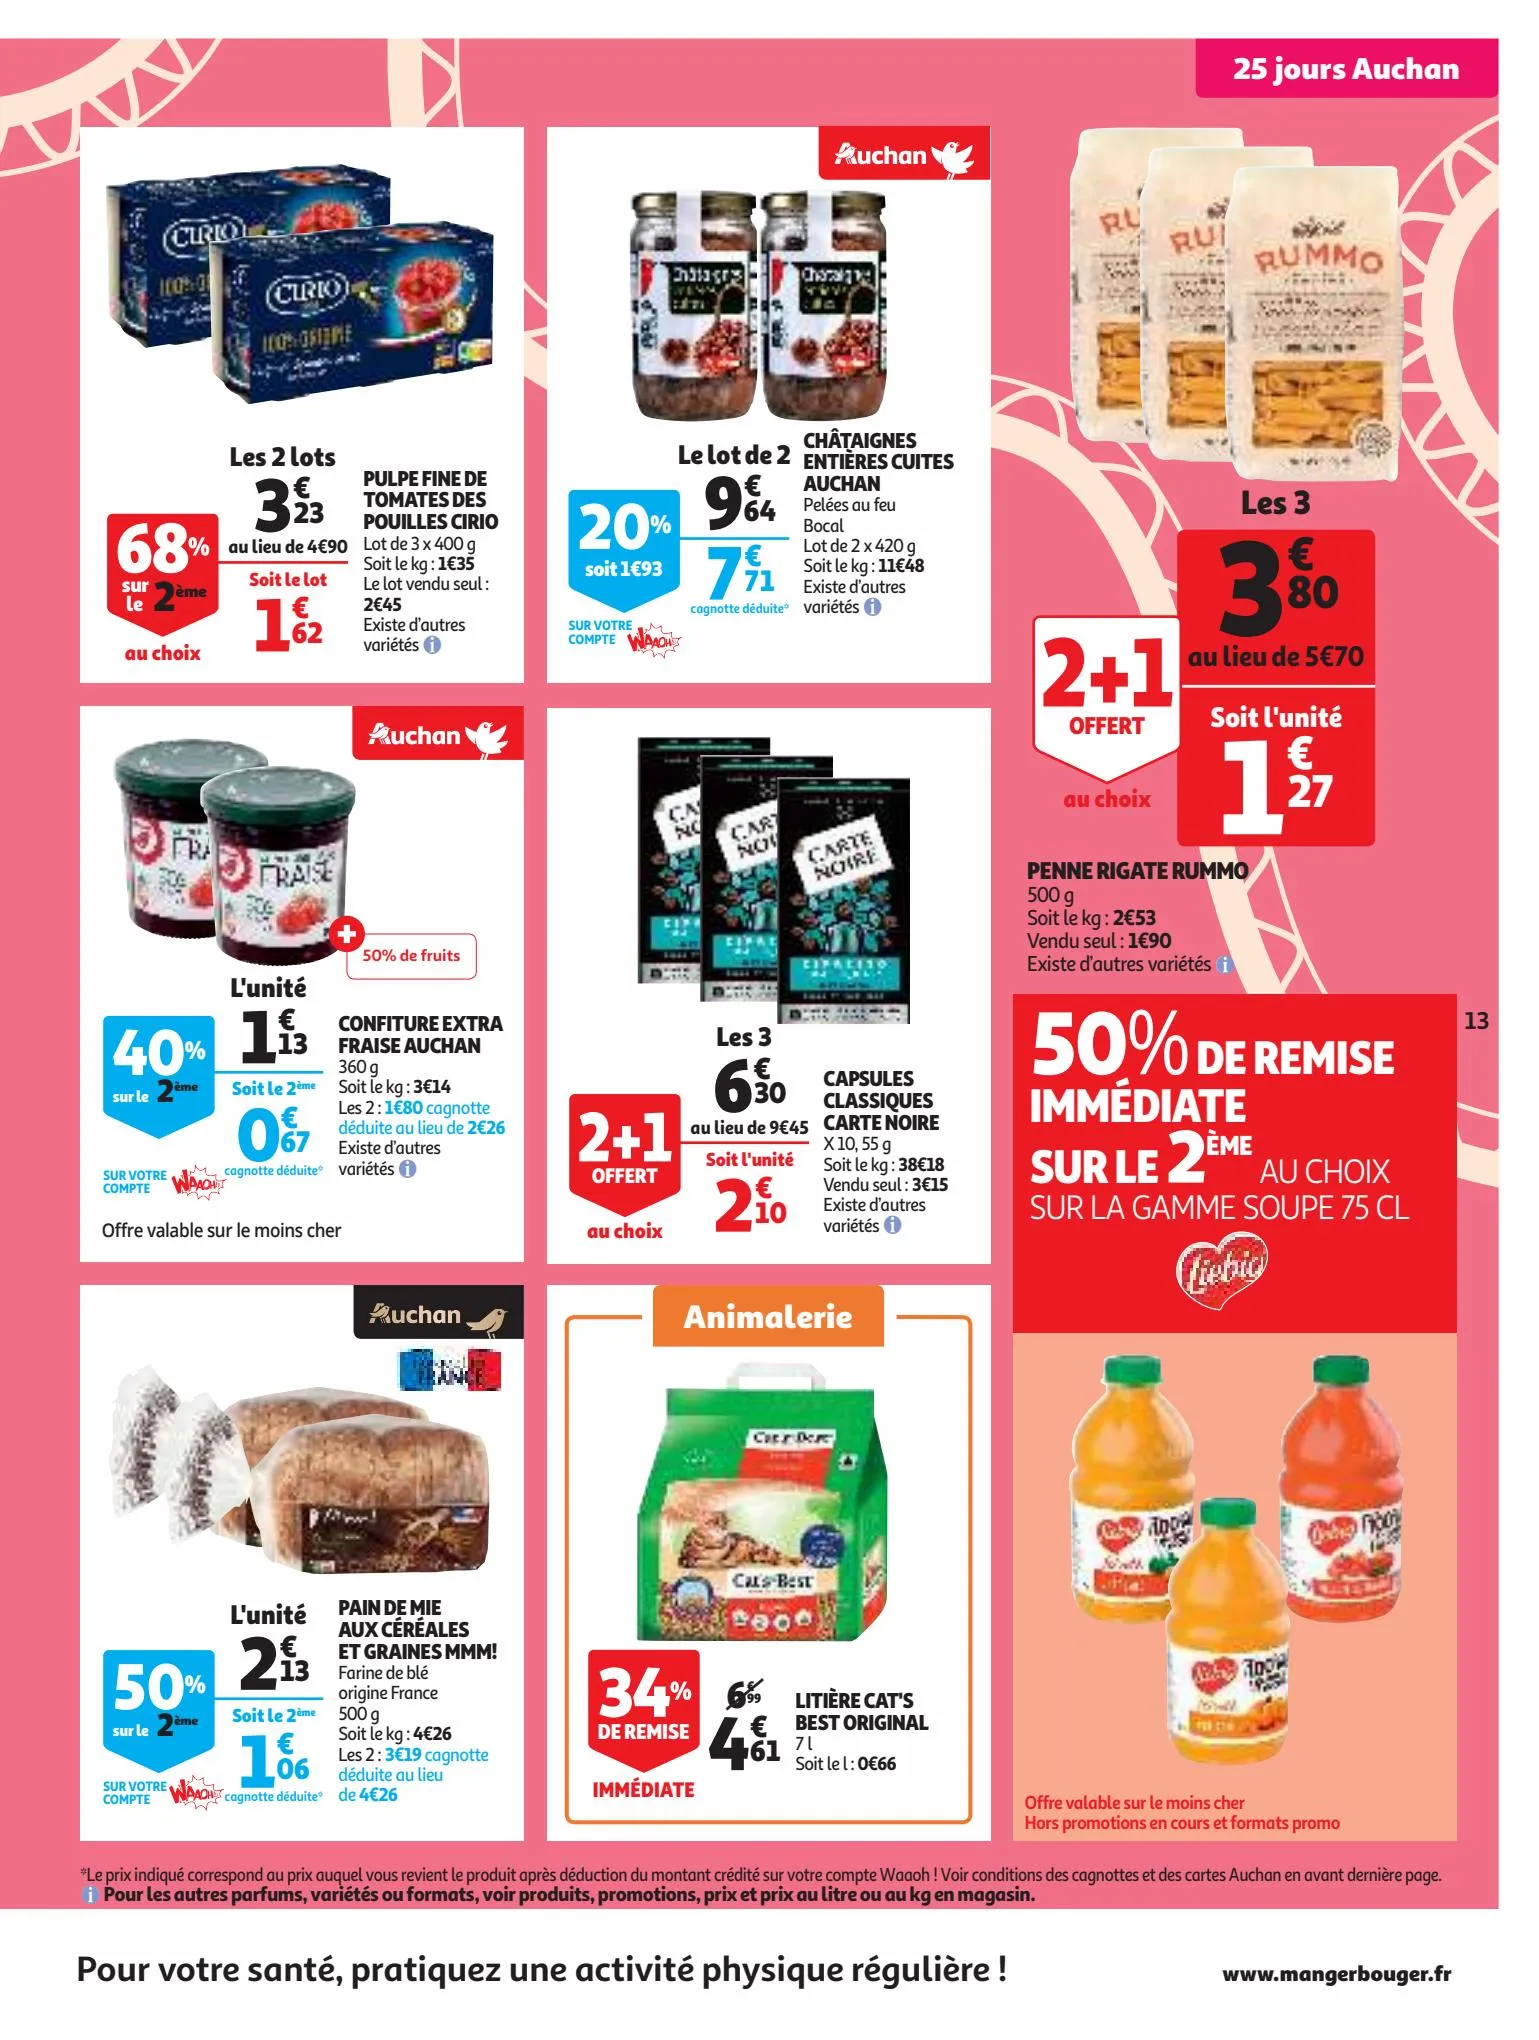 Catalogue 25 jours Auchan, page 00013